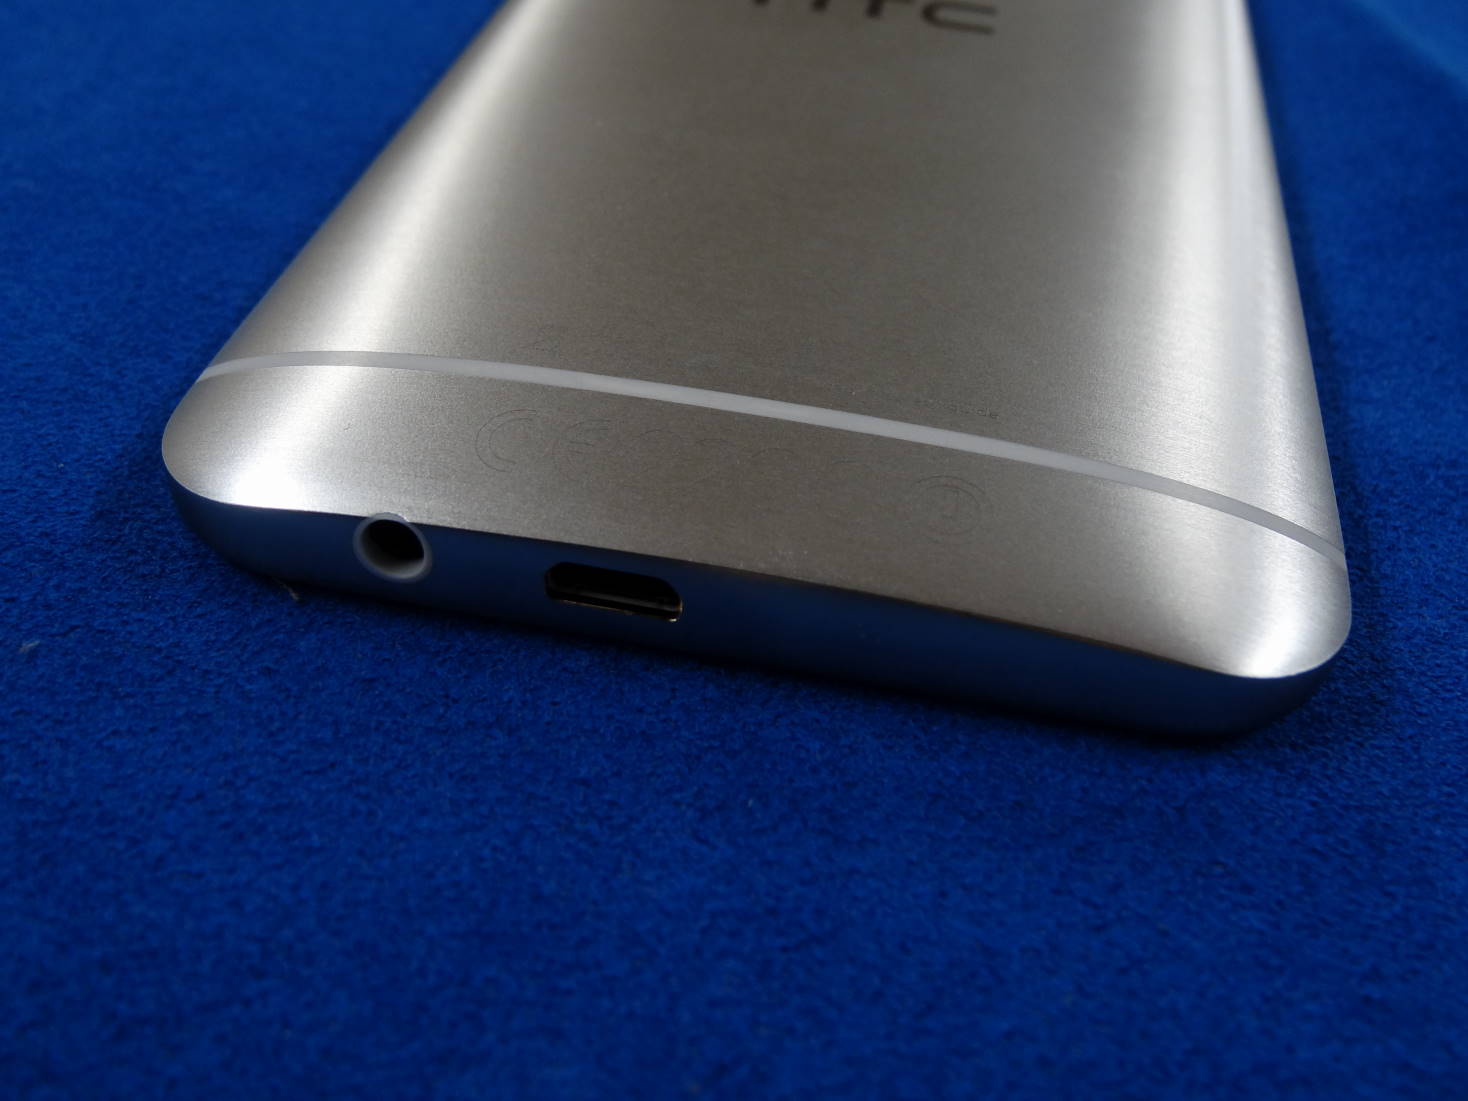 HTC One M9 Plus 底面